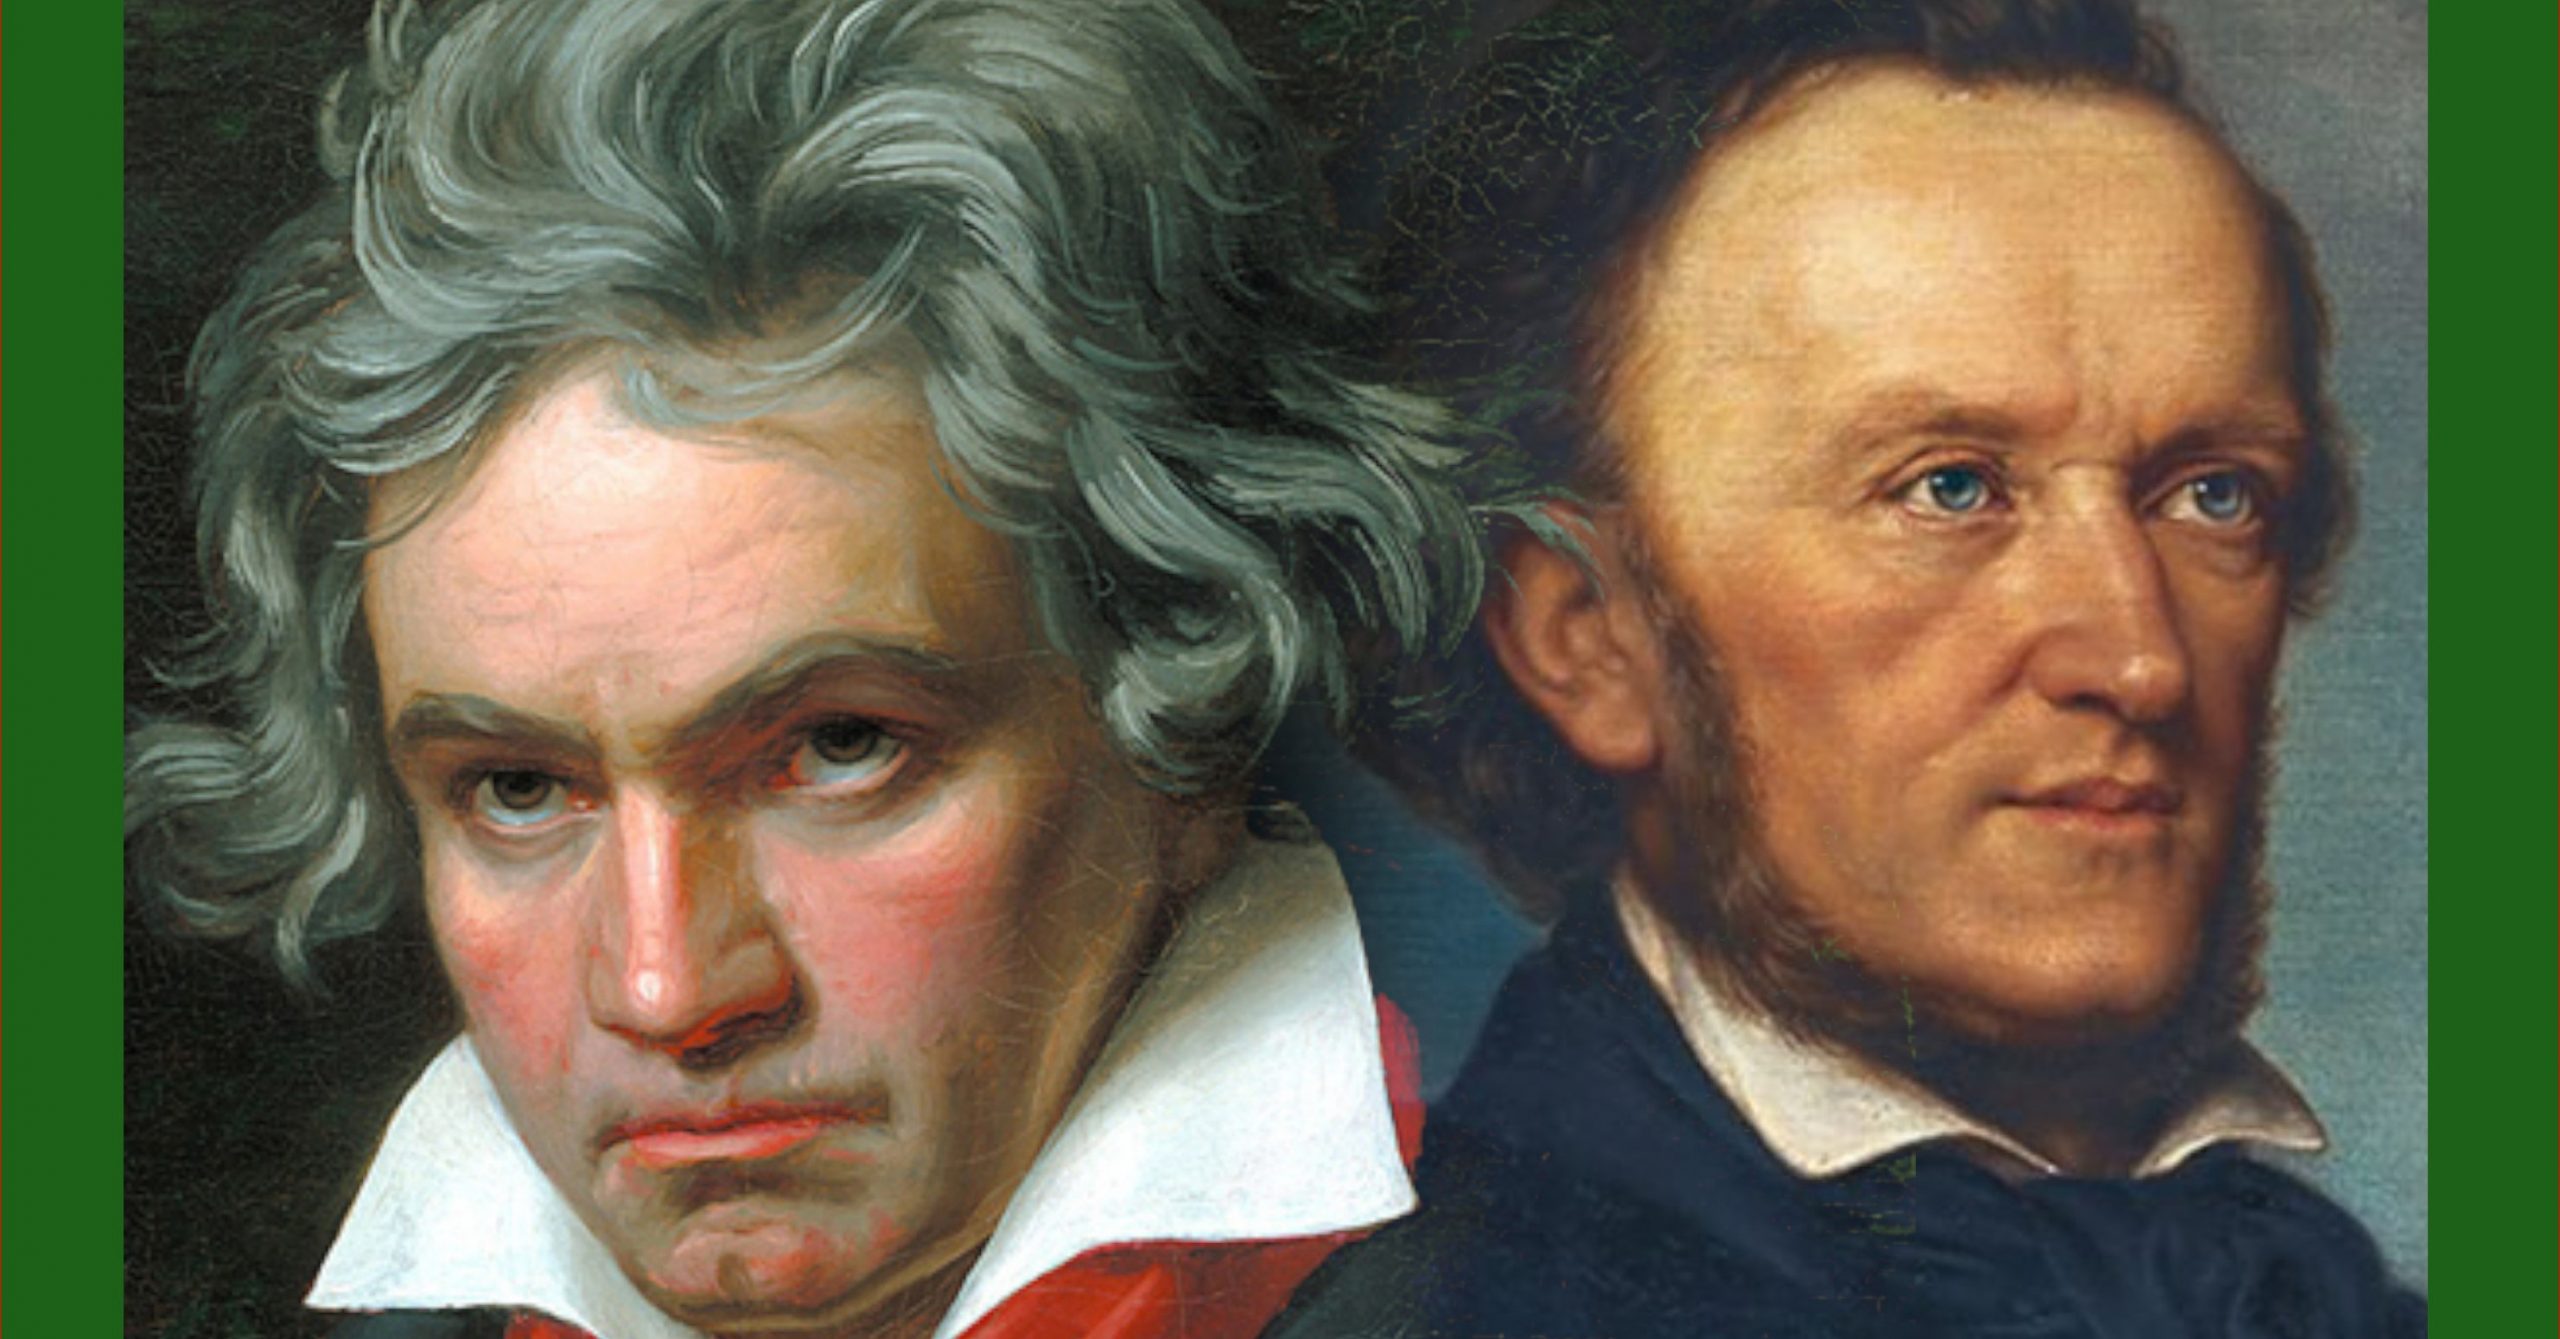 Mein Wagner – Eine Pilgerfahrt zu Beethoven